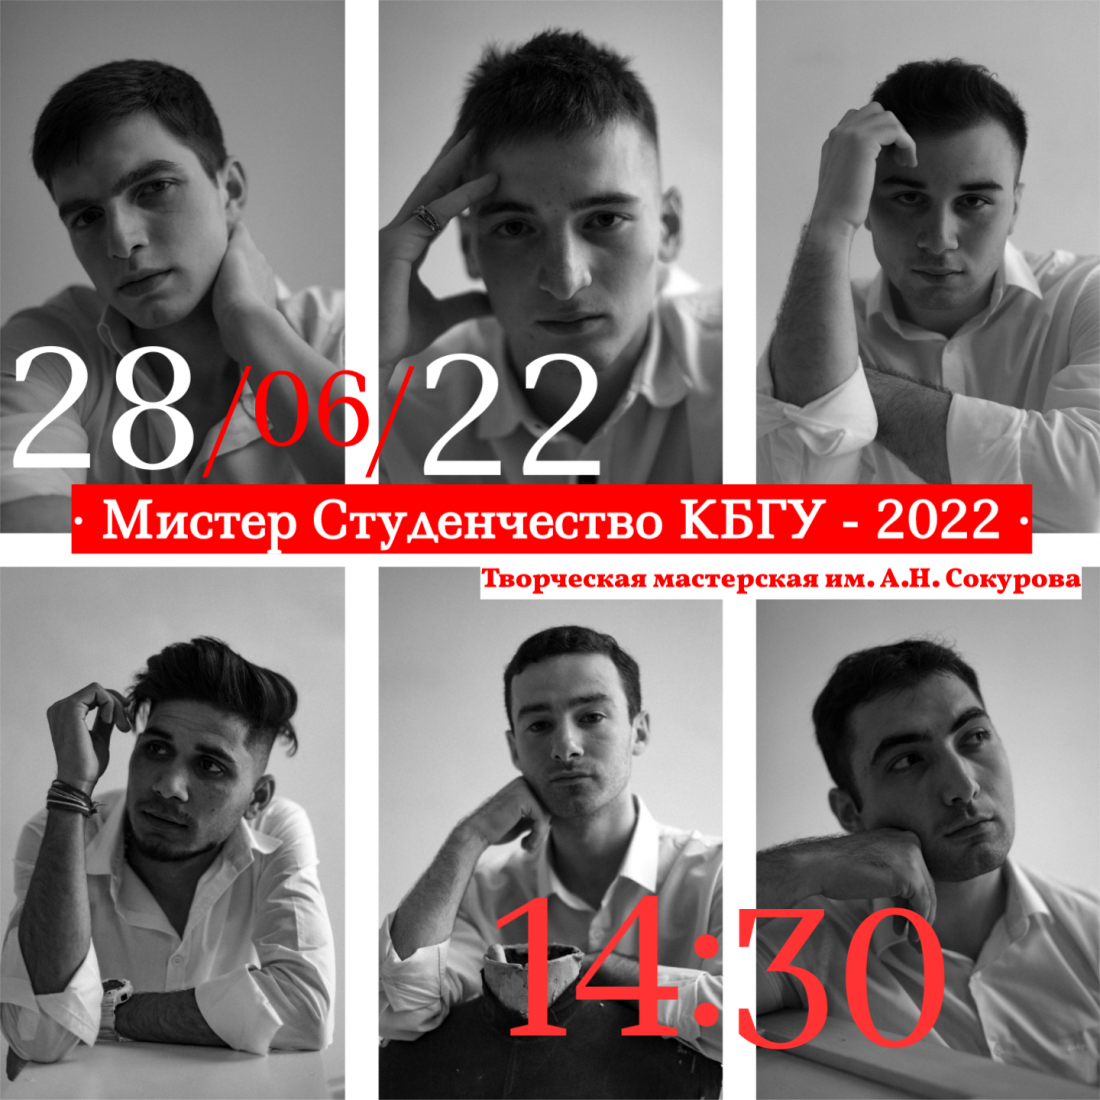 28.06.2022 Конкурс "Мистер Студенчество КБГУ - 2022"